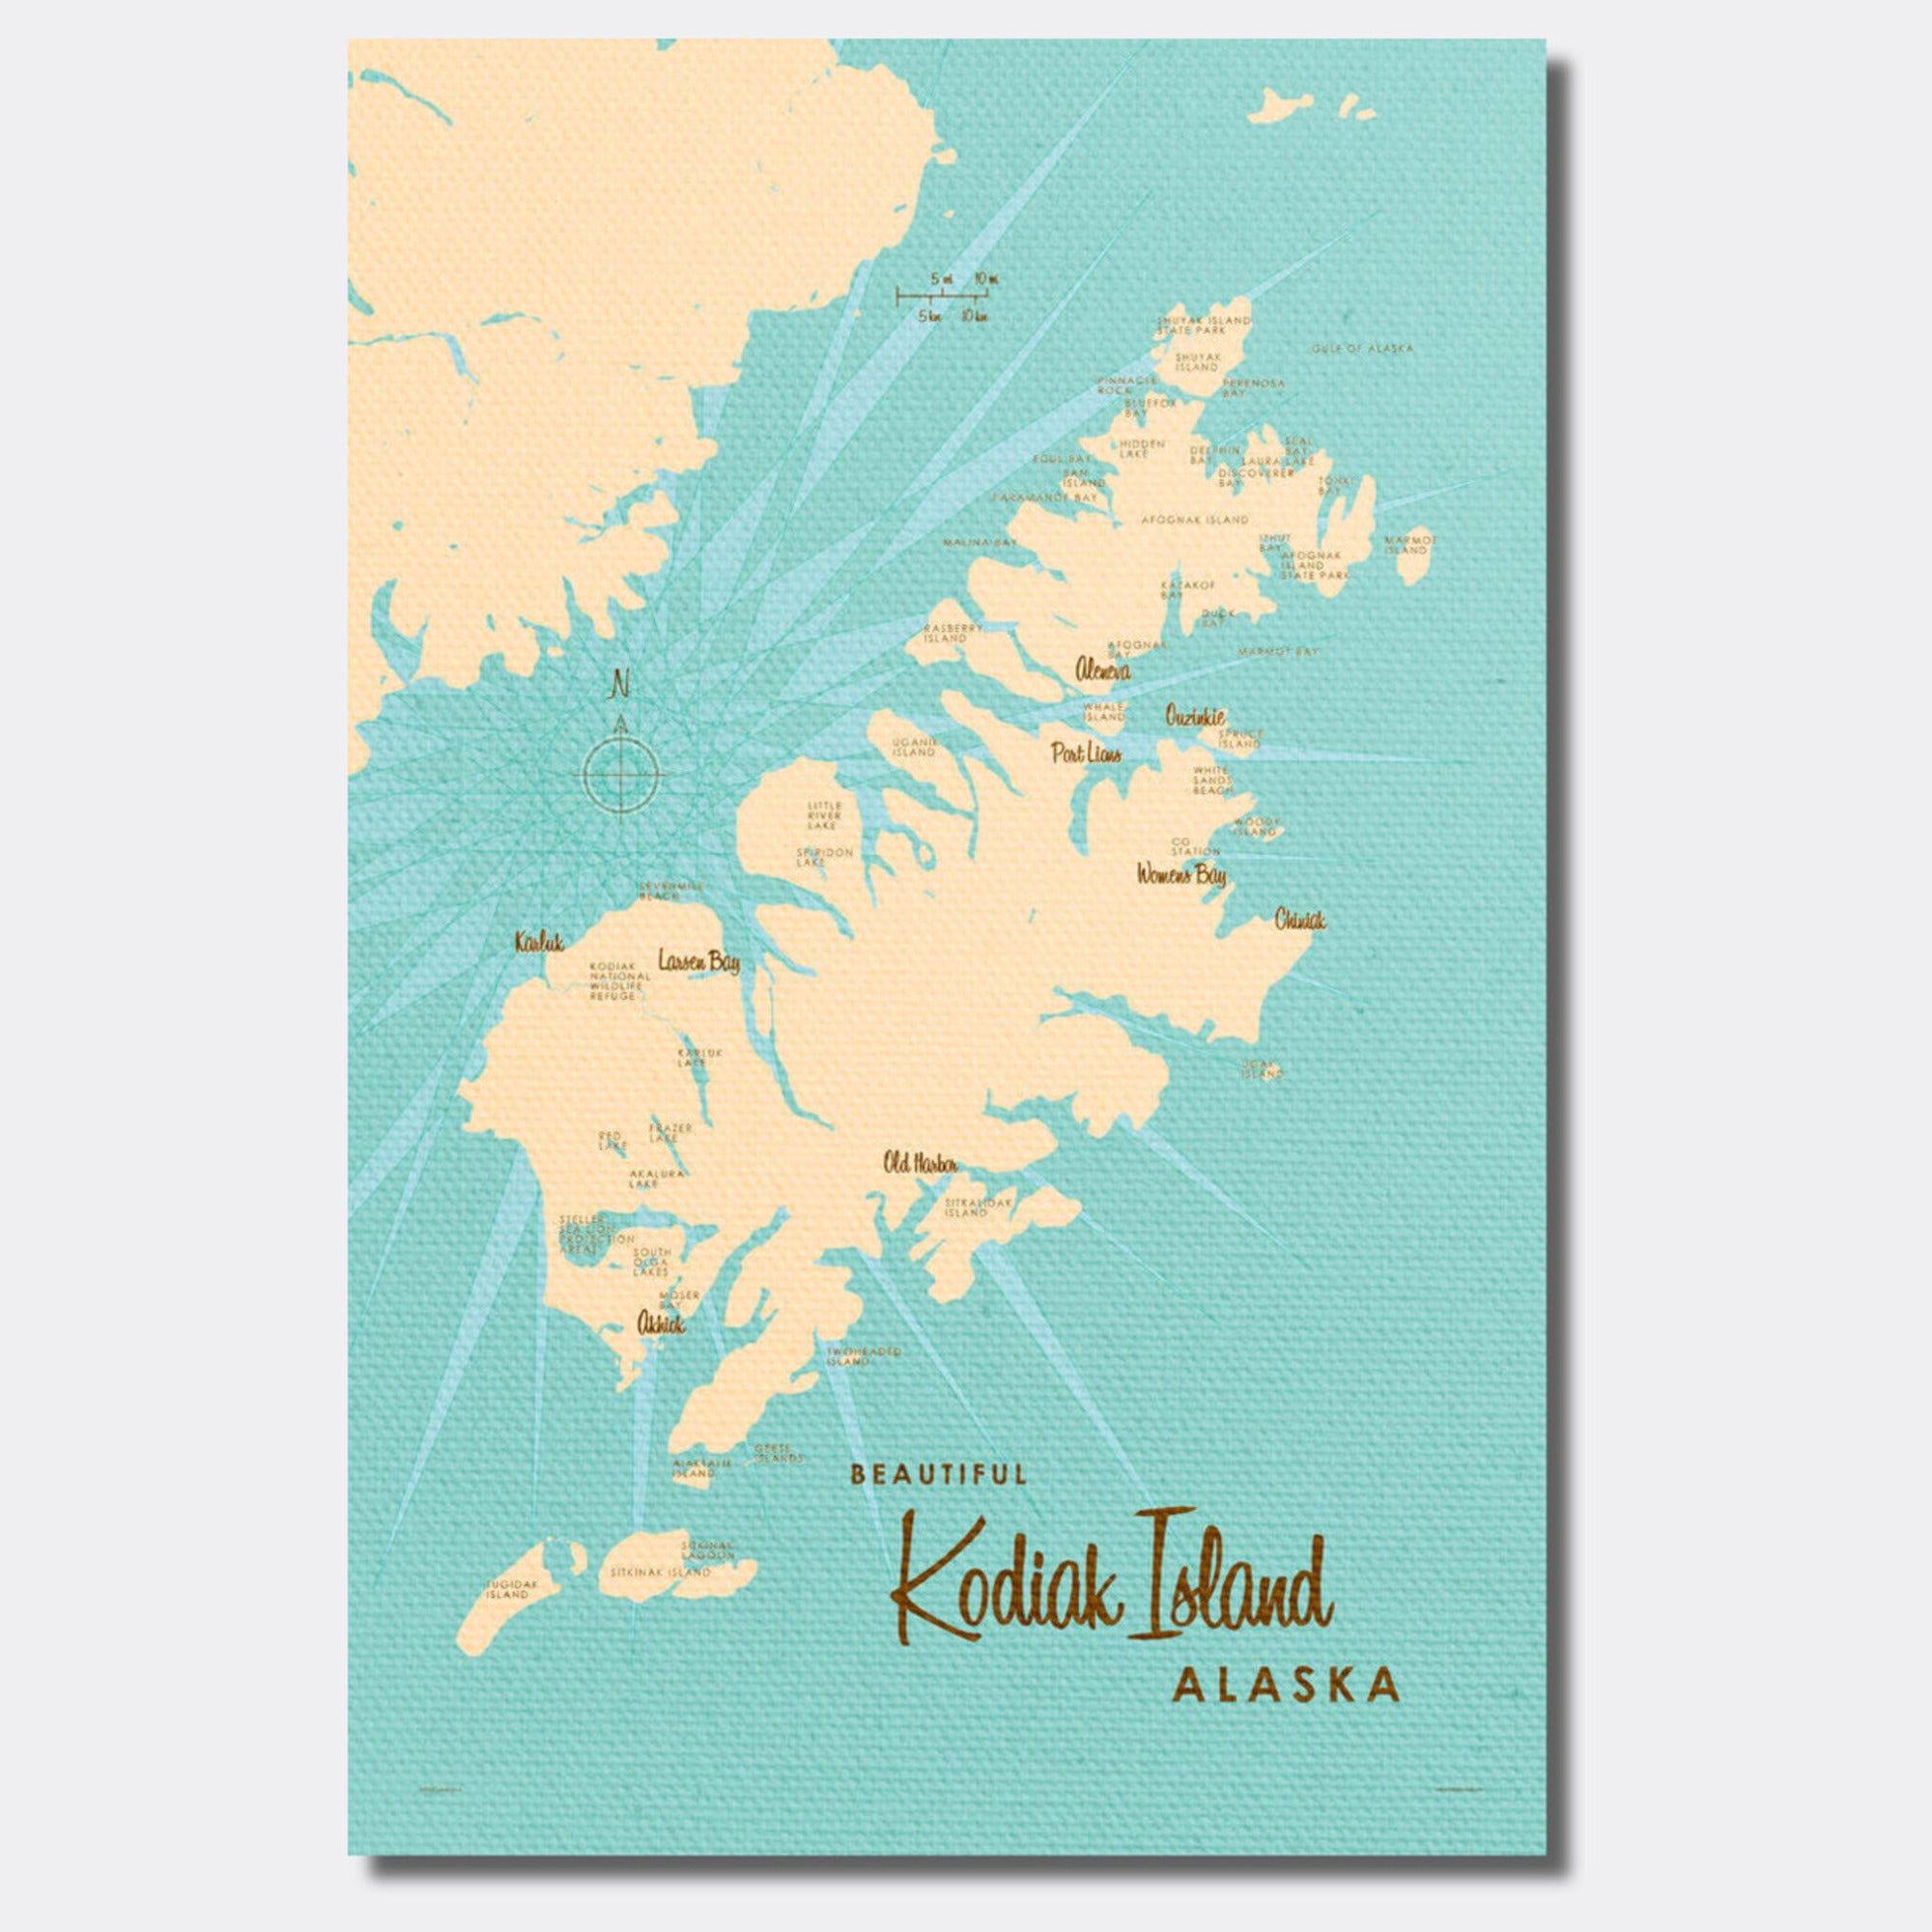 Kodiak Island Alaska, Canvas Print